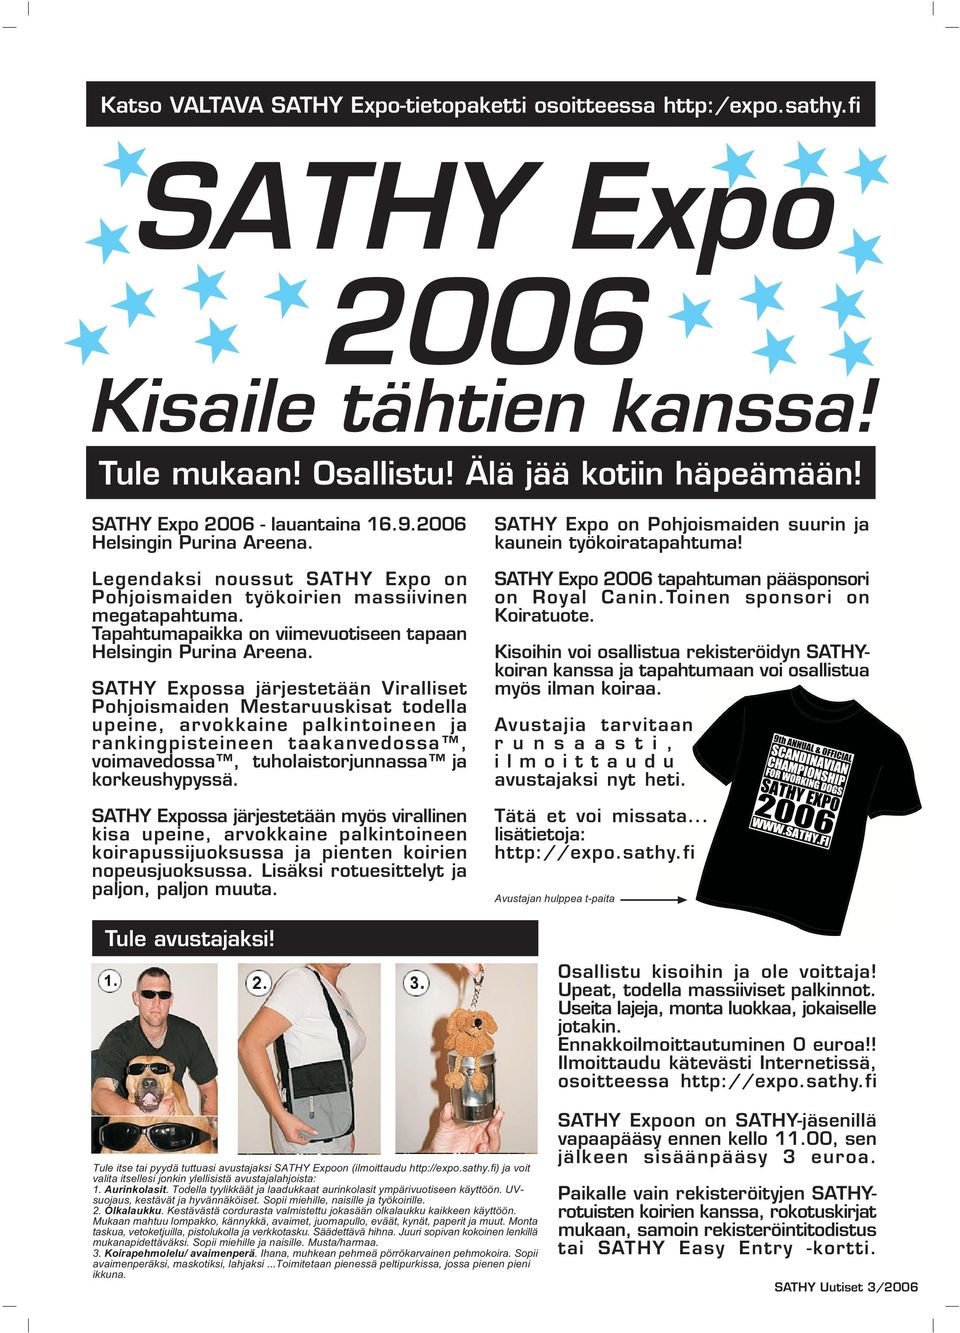 SATHY Expossa järjestetään Viralliset Pohjoismaiden Mestaruuskisat todella upeine, arvokkaine palkintoineen ja rankingpisteineen taakanvedossa, voimavedossa, tuholaistorjunnassa ja korkeushypyssä.